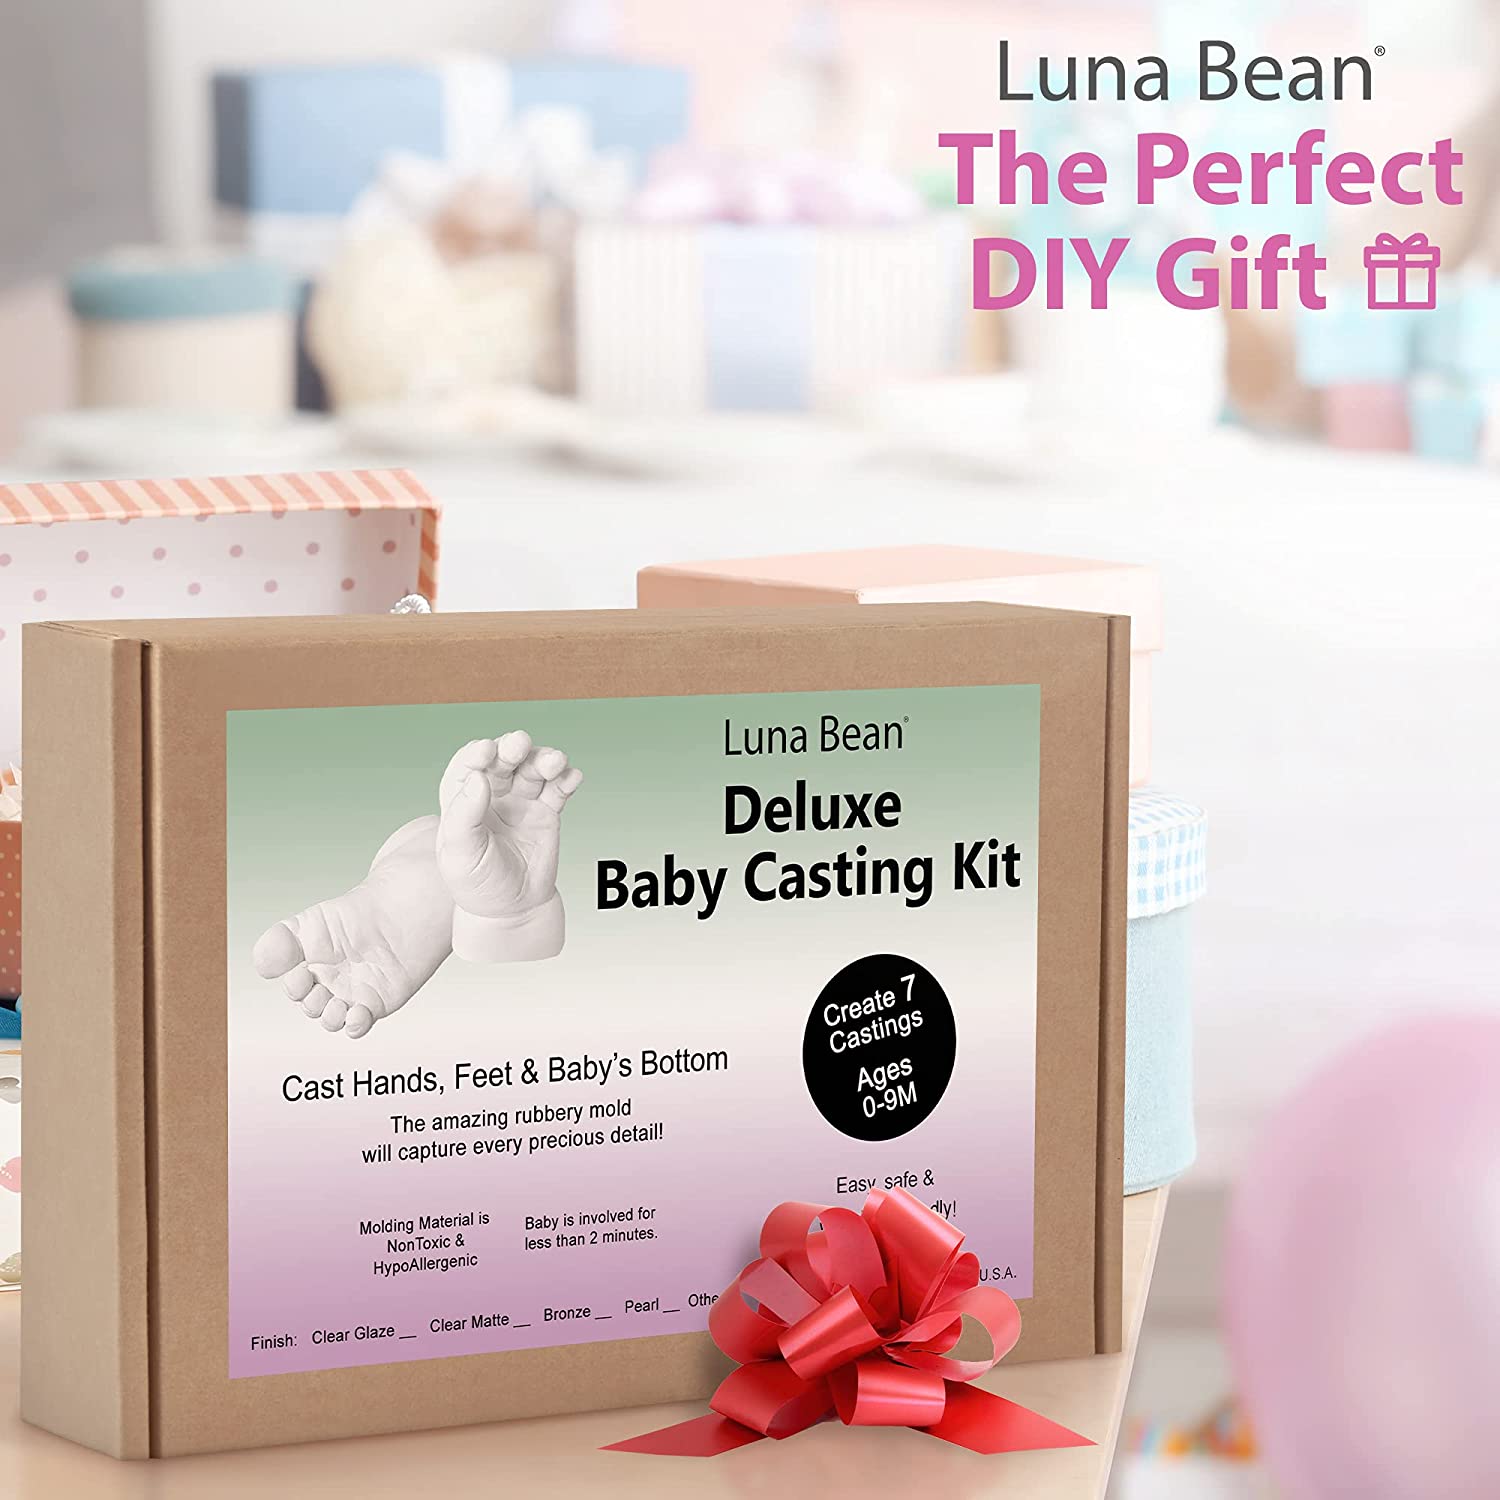 Luna Bean Baby Keepsake Hand Casting Kit - Plaster Hand Molding Casting Kit for Infant Hand & Foot Molding - Baby Casting Kit for First Birthday, Chr